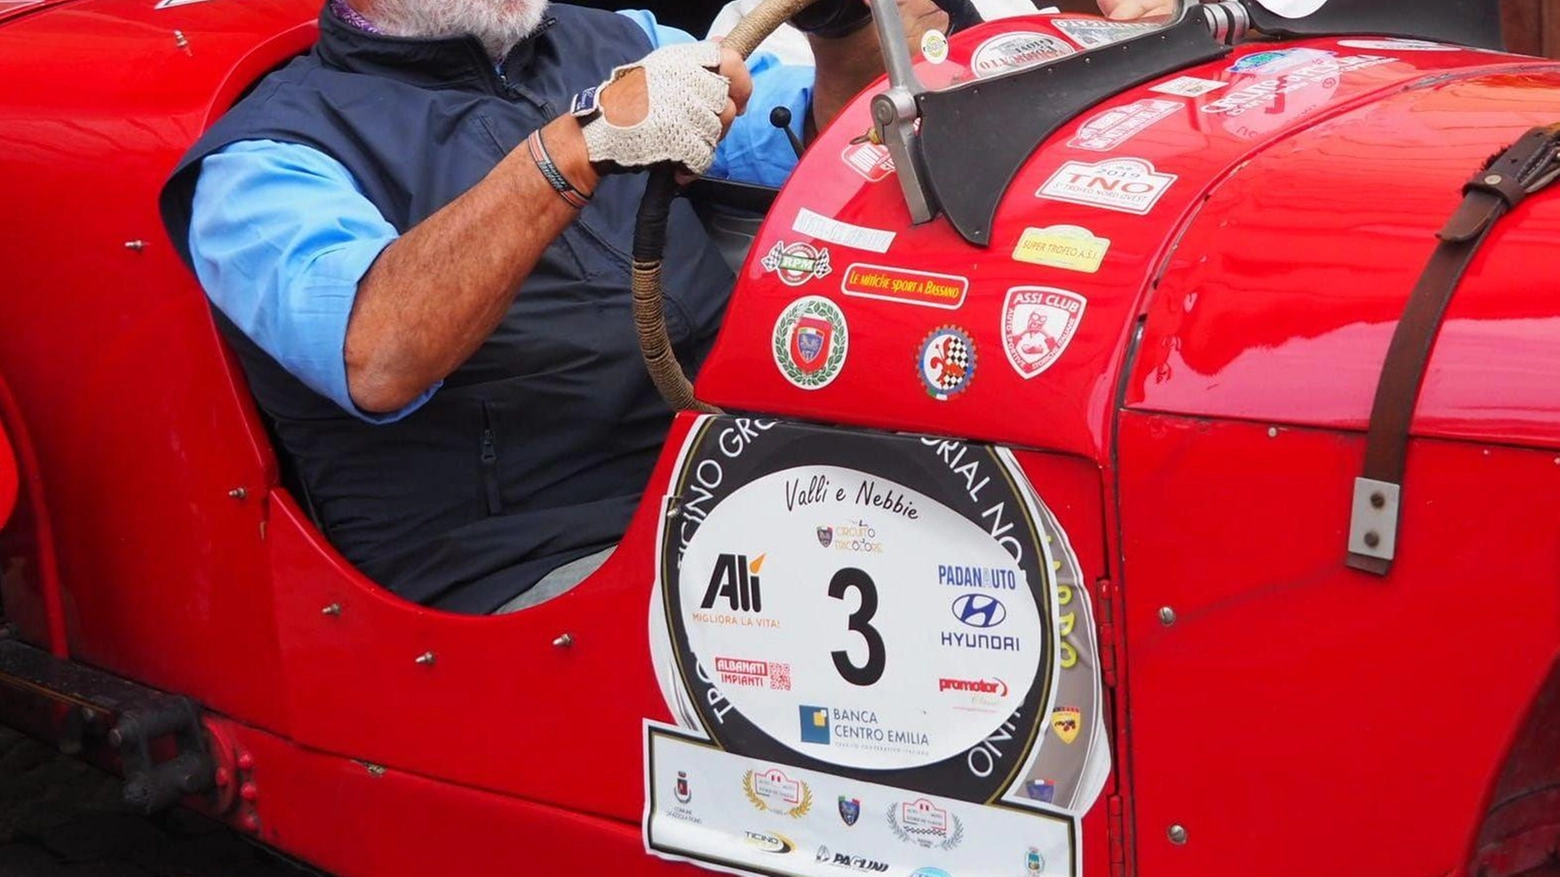 Il Lions Club Busto Arsizio Host organizza il decimo rally di auto d'epoca per il suo settantesimo anniversario, con prove di abilità e regolarità lungo un percorso di 80 km. Evento sostenuto da Paglini Store per raccogliere fondi per i service del Club.